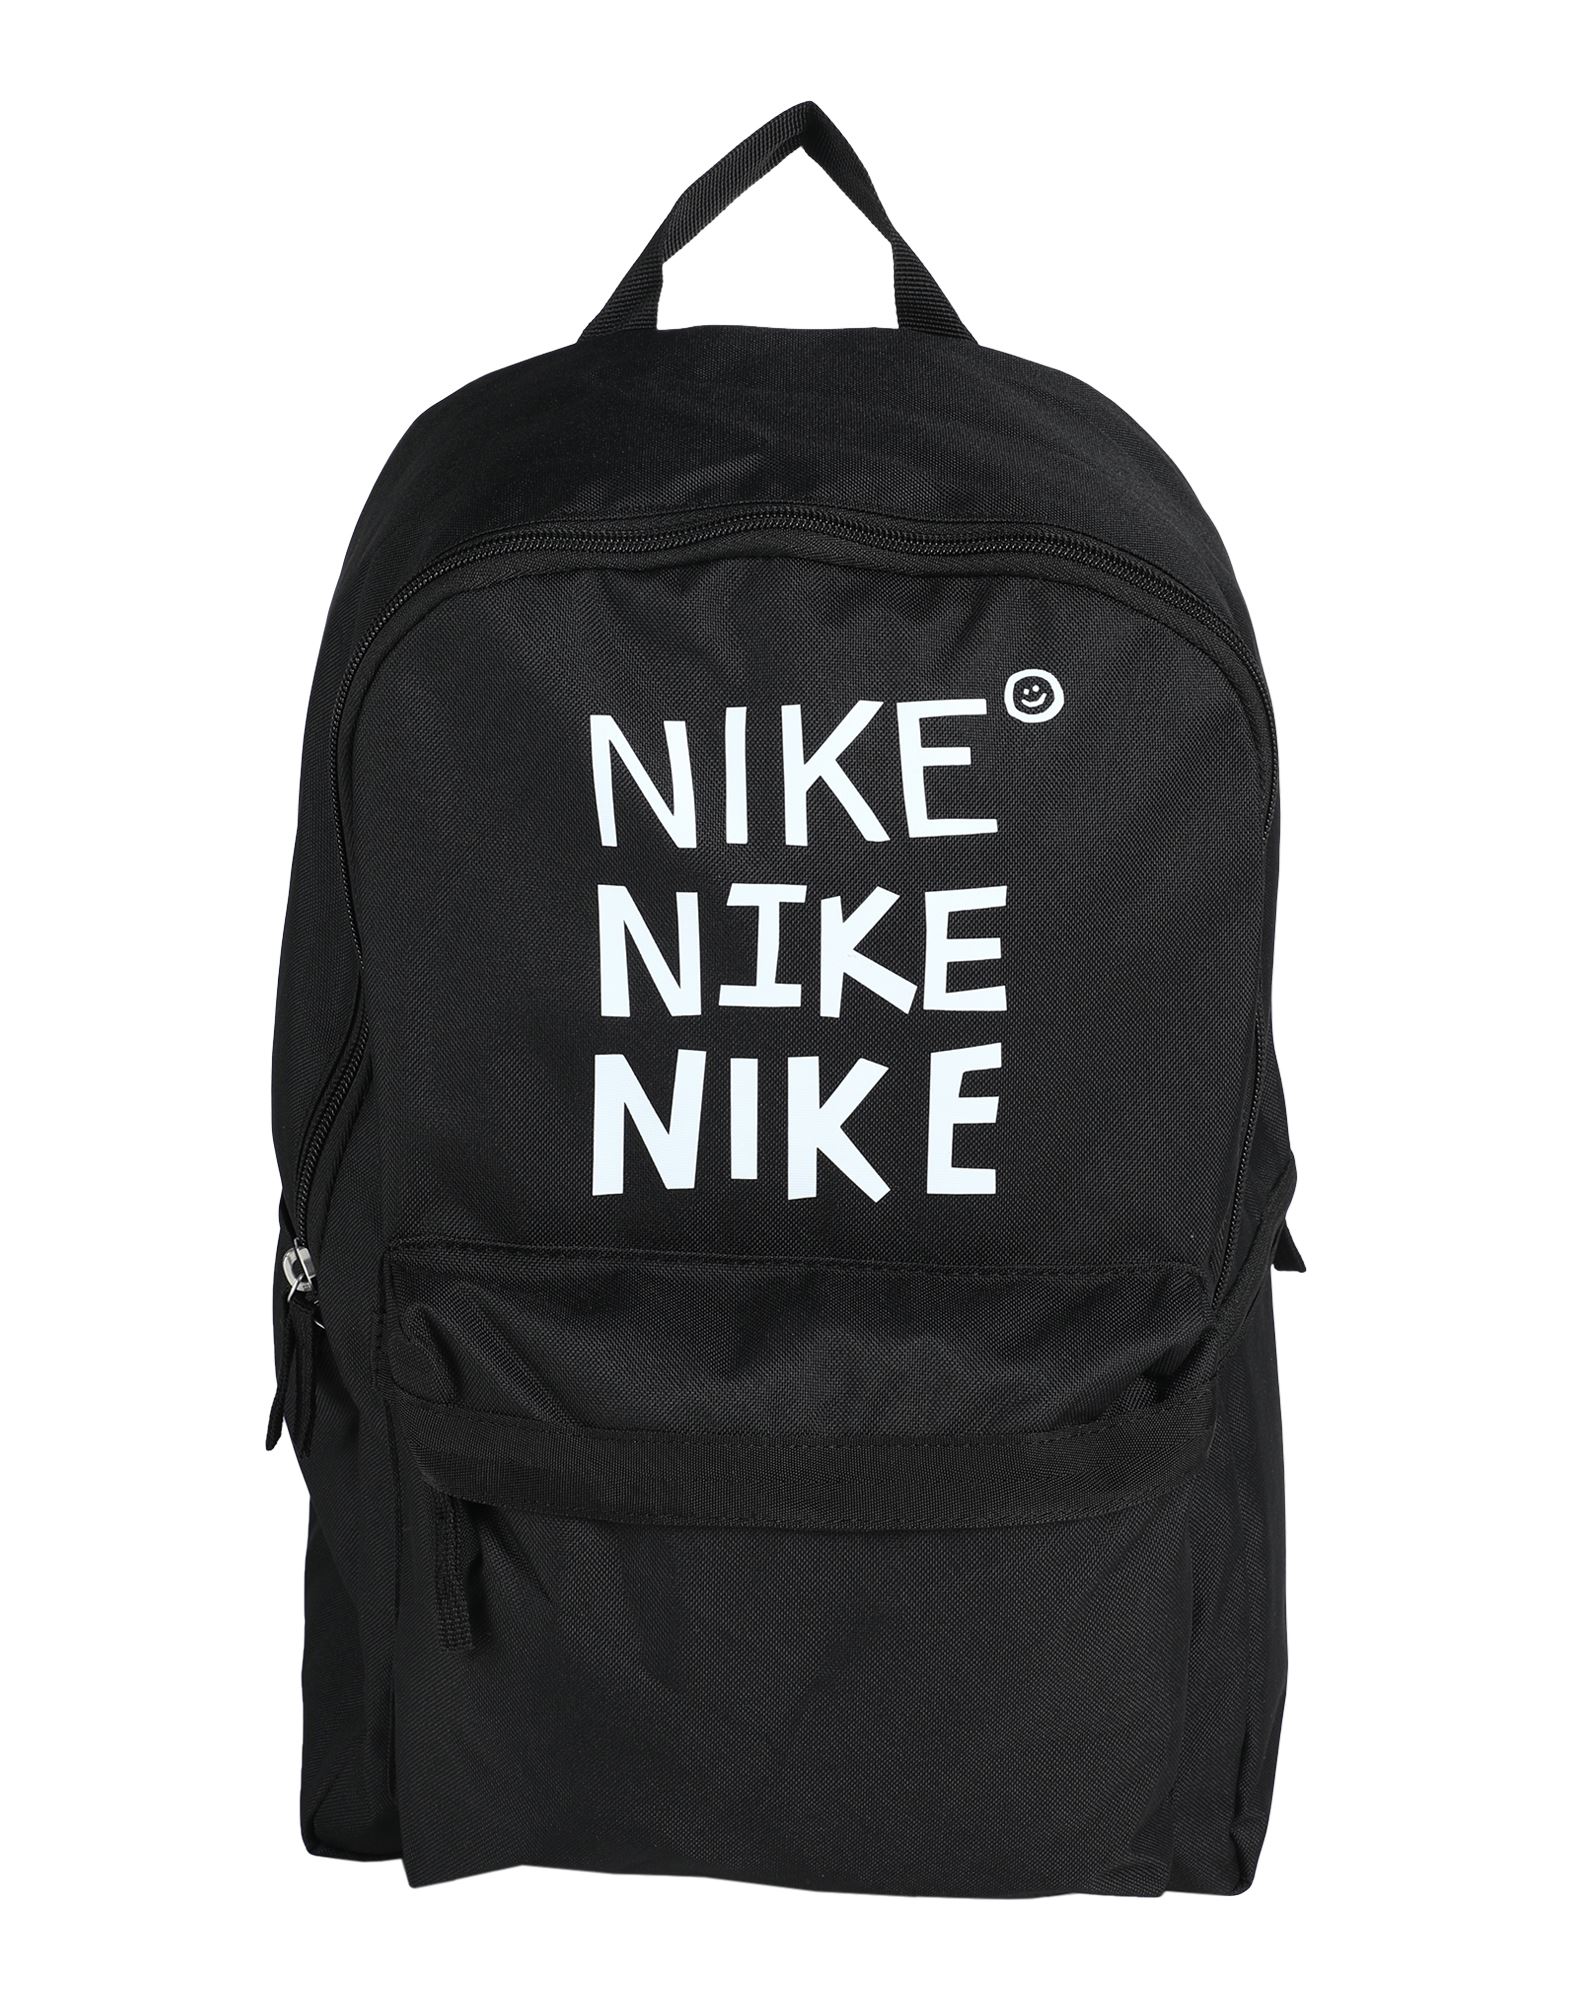 NIKE Backpacks